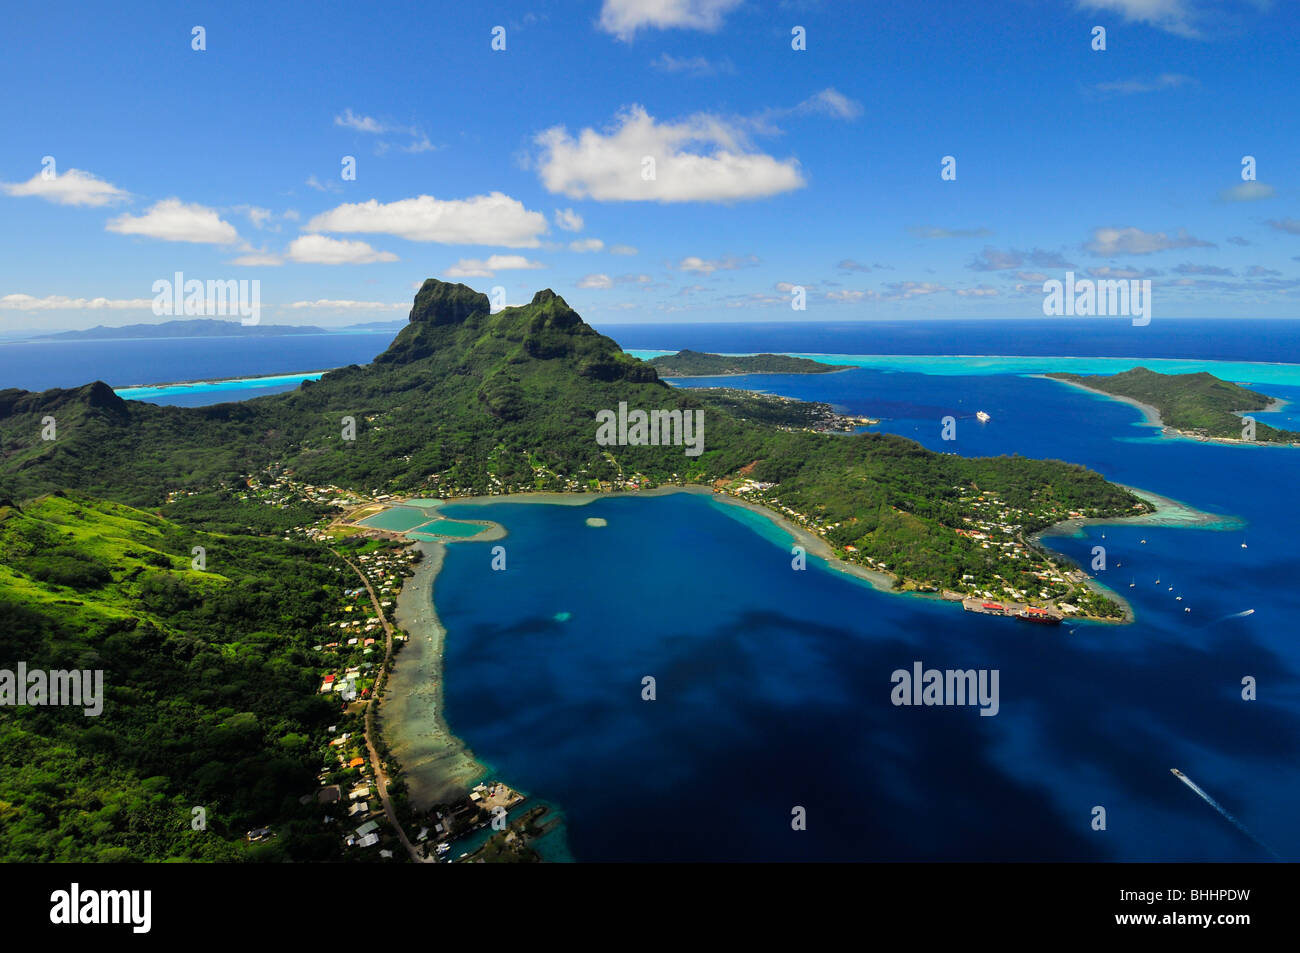 Bora Bora island in French Polynesia Stock Photo